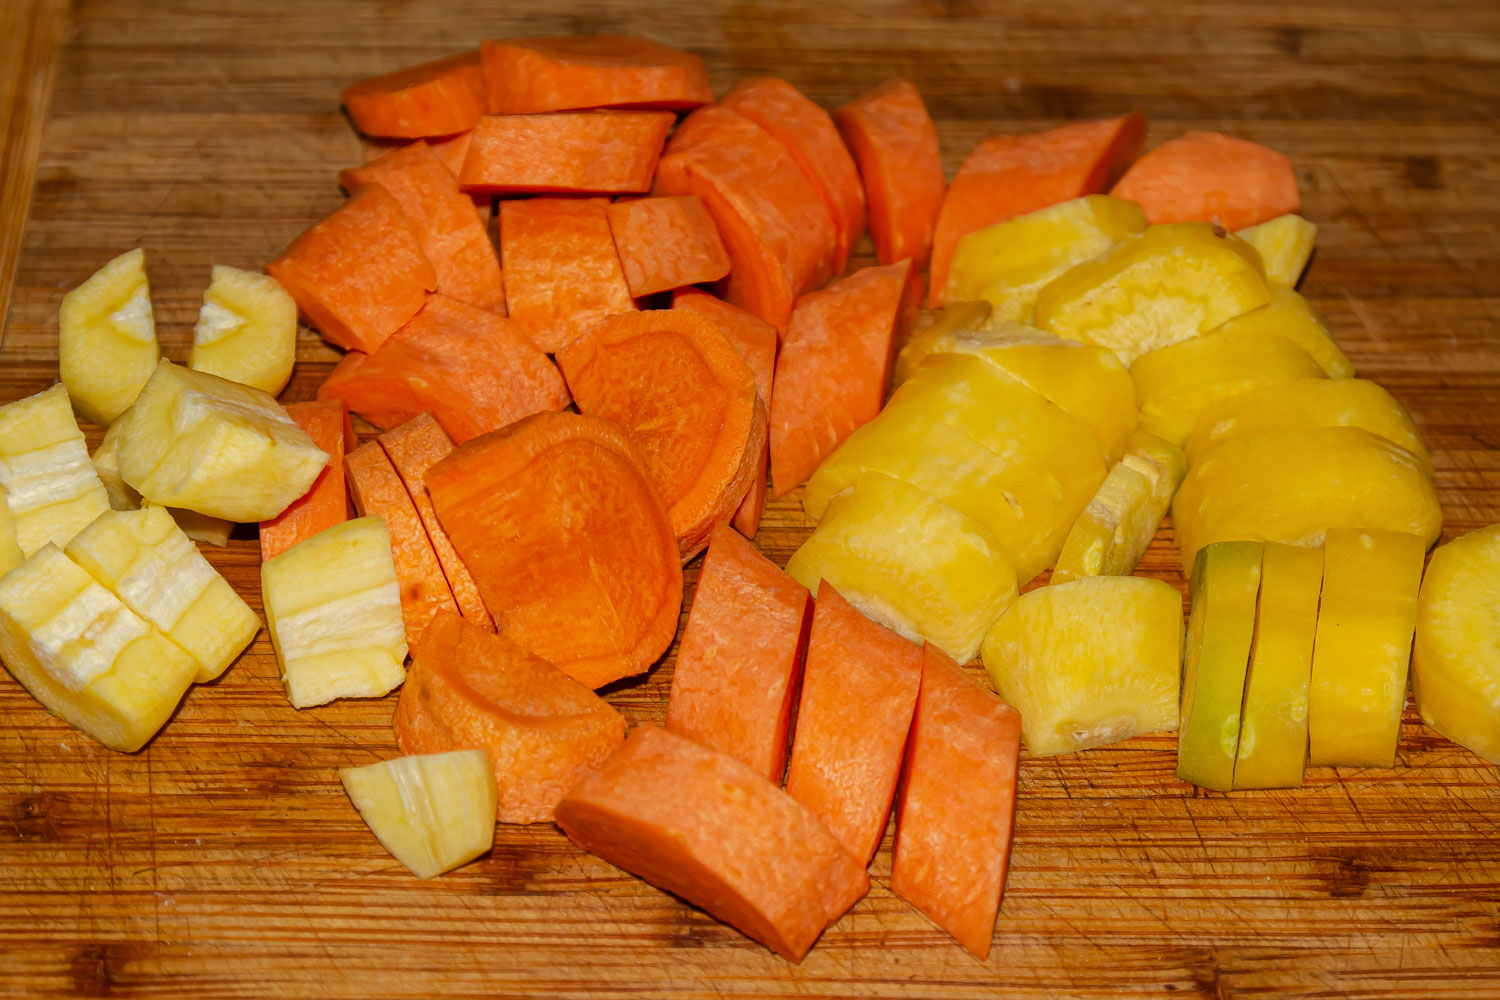 нарезанная морковь по рецепту Говядина с картофелем в афганском казане 